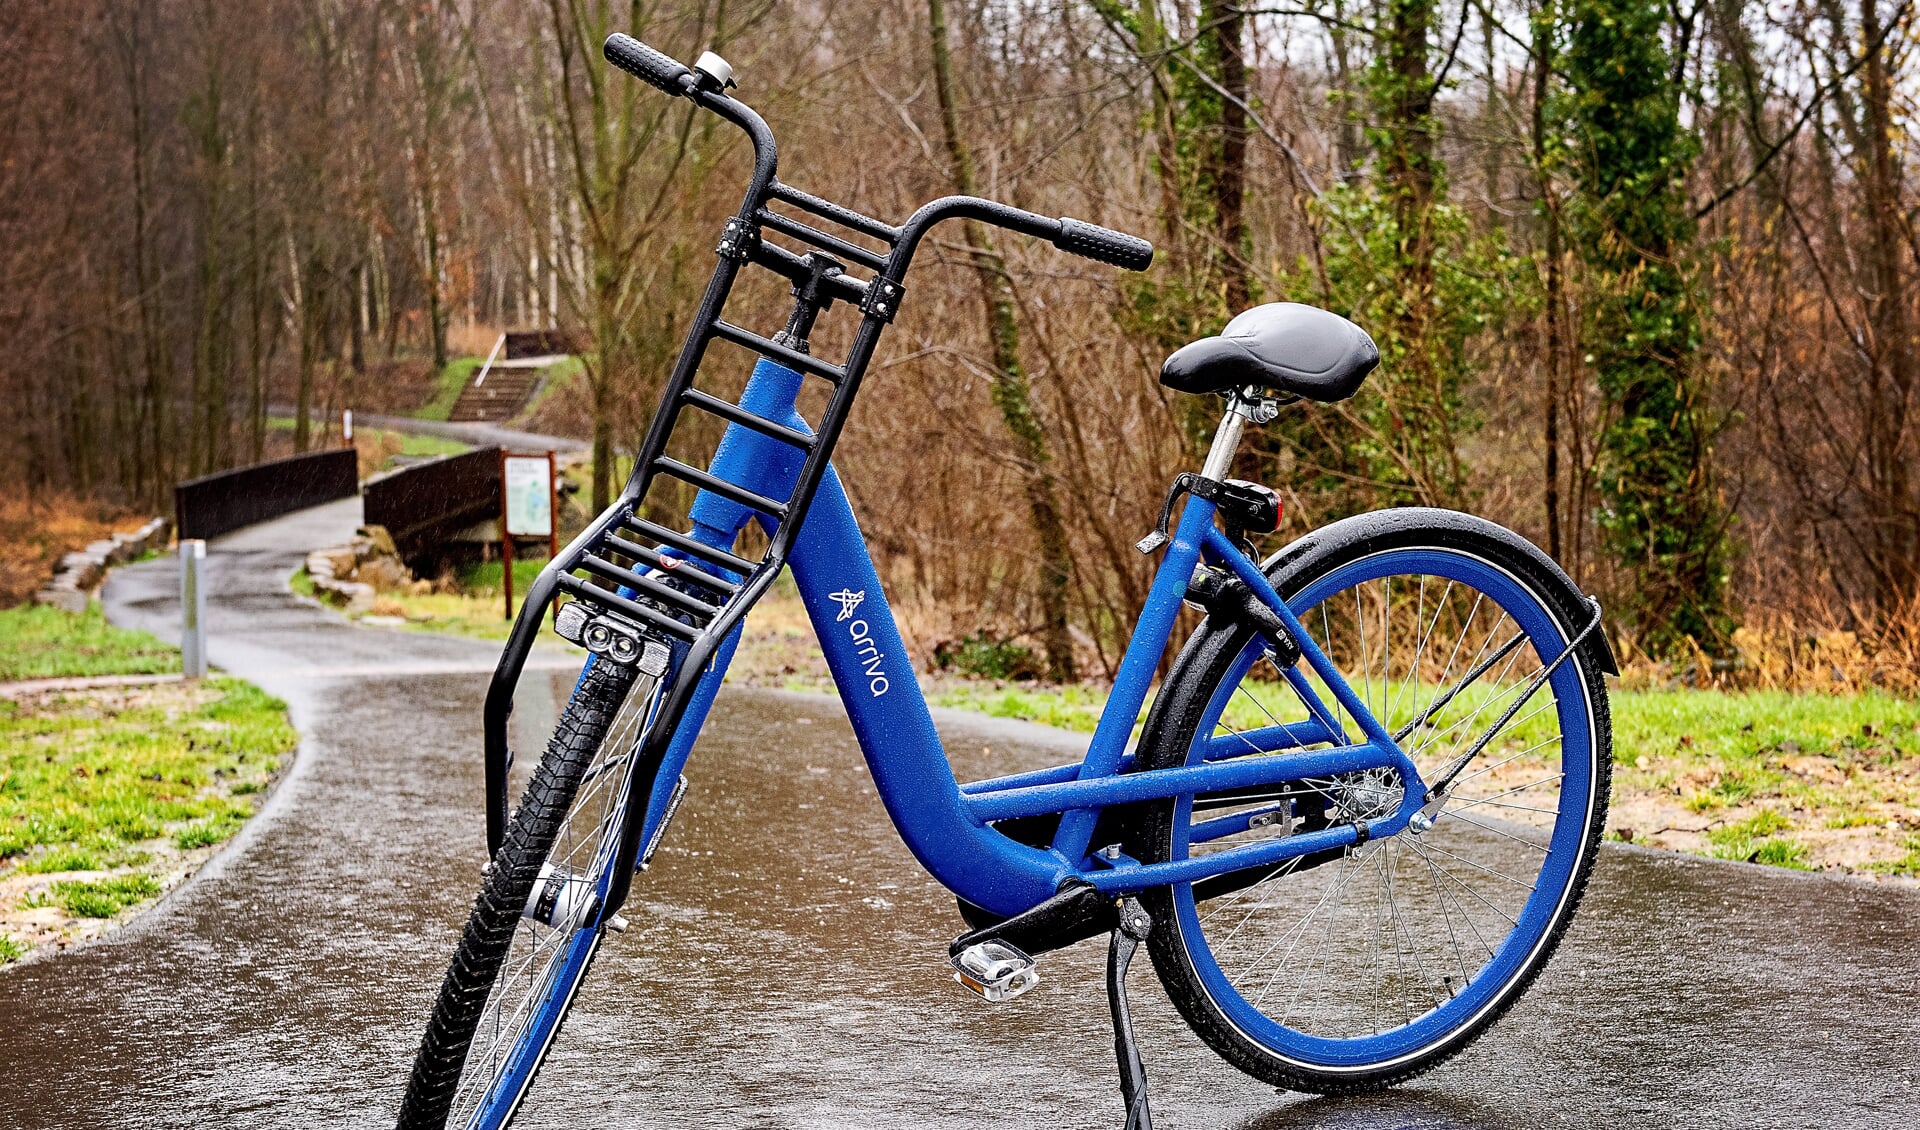 De opvallend blauwe Arriva deelfiets is een normale fiets, zonder trapondersteuning, bedoeld om de reiziger tot op de eindbestemming te brengen. Velocity biedt zwart-witte, elektrische fietsen aan voor woon-werkverkeer. Beide zijn te reserveren en huren met behulp van een app. 